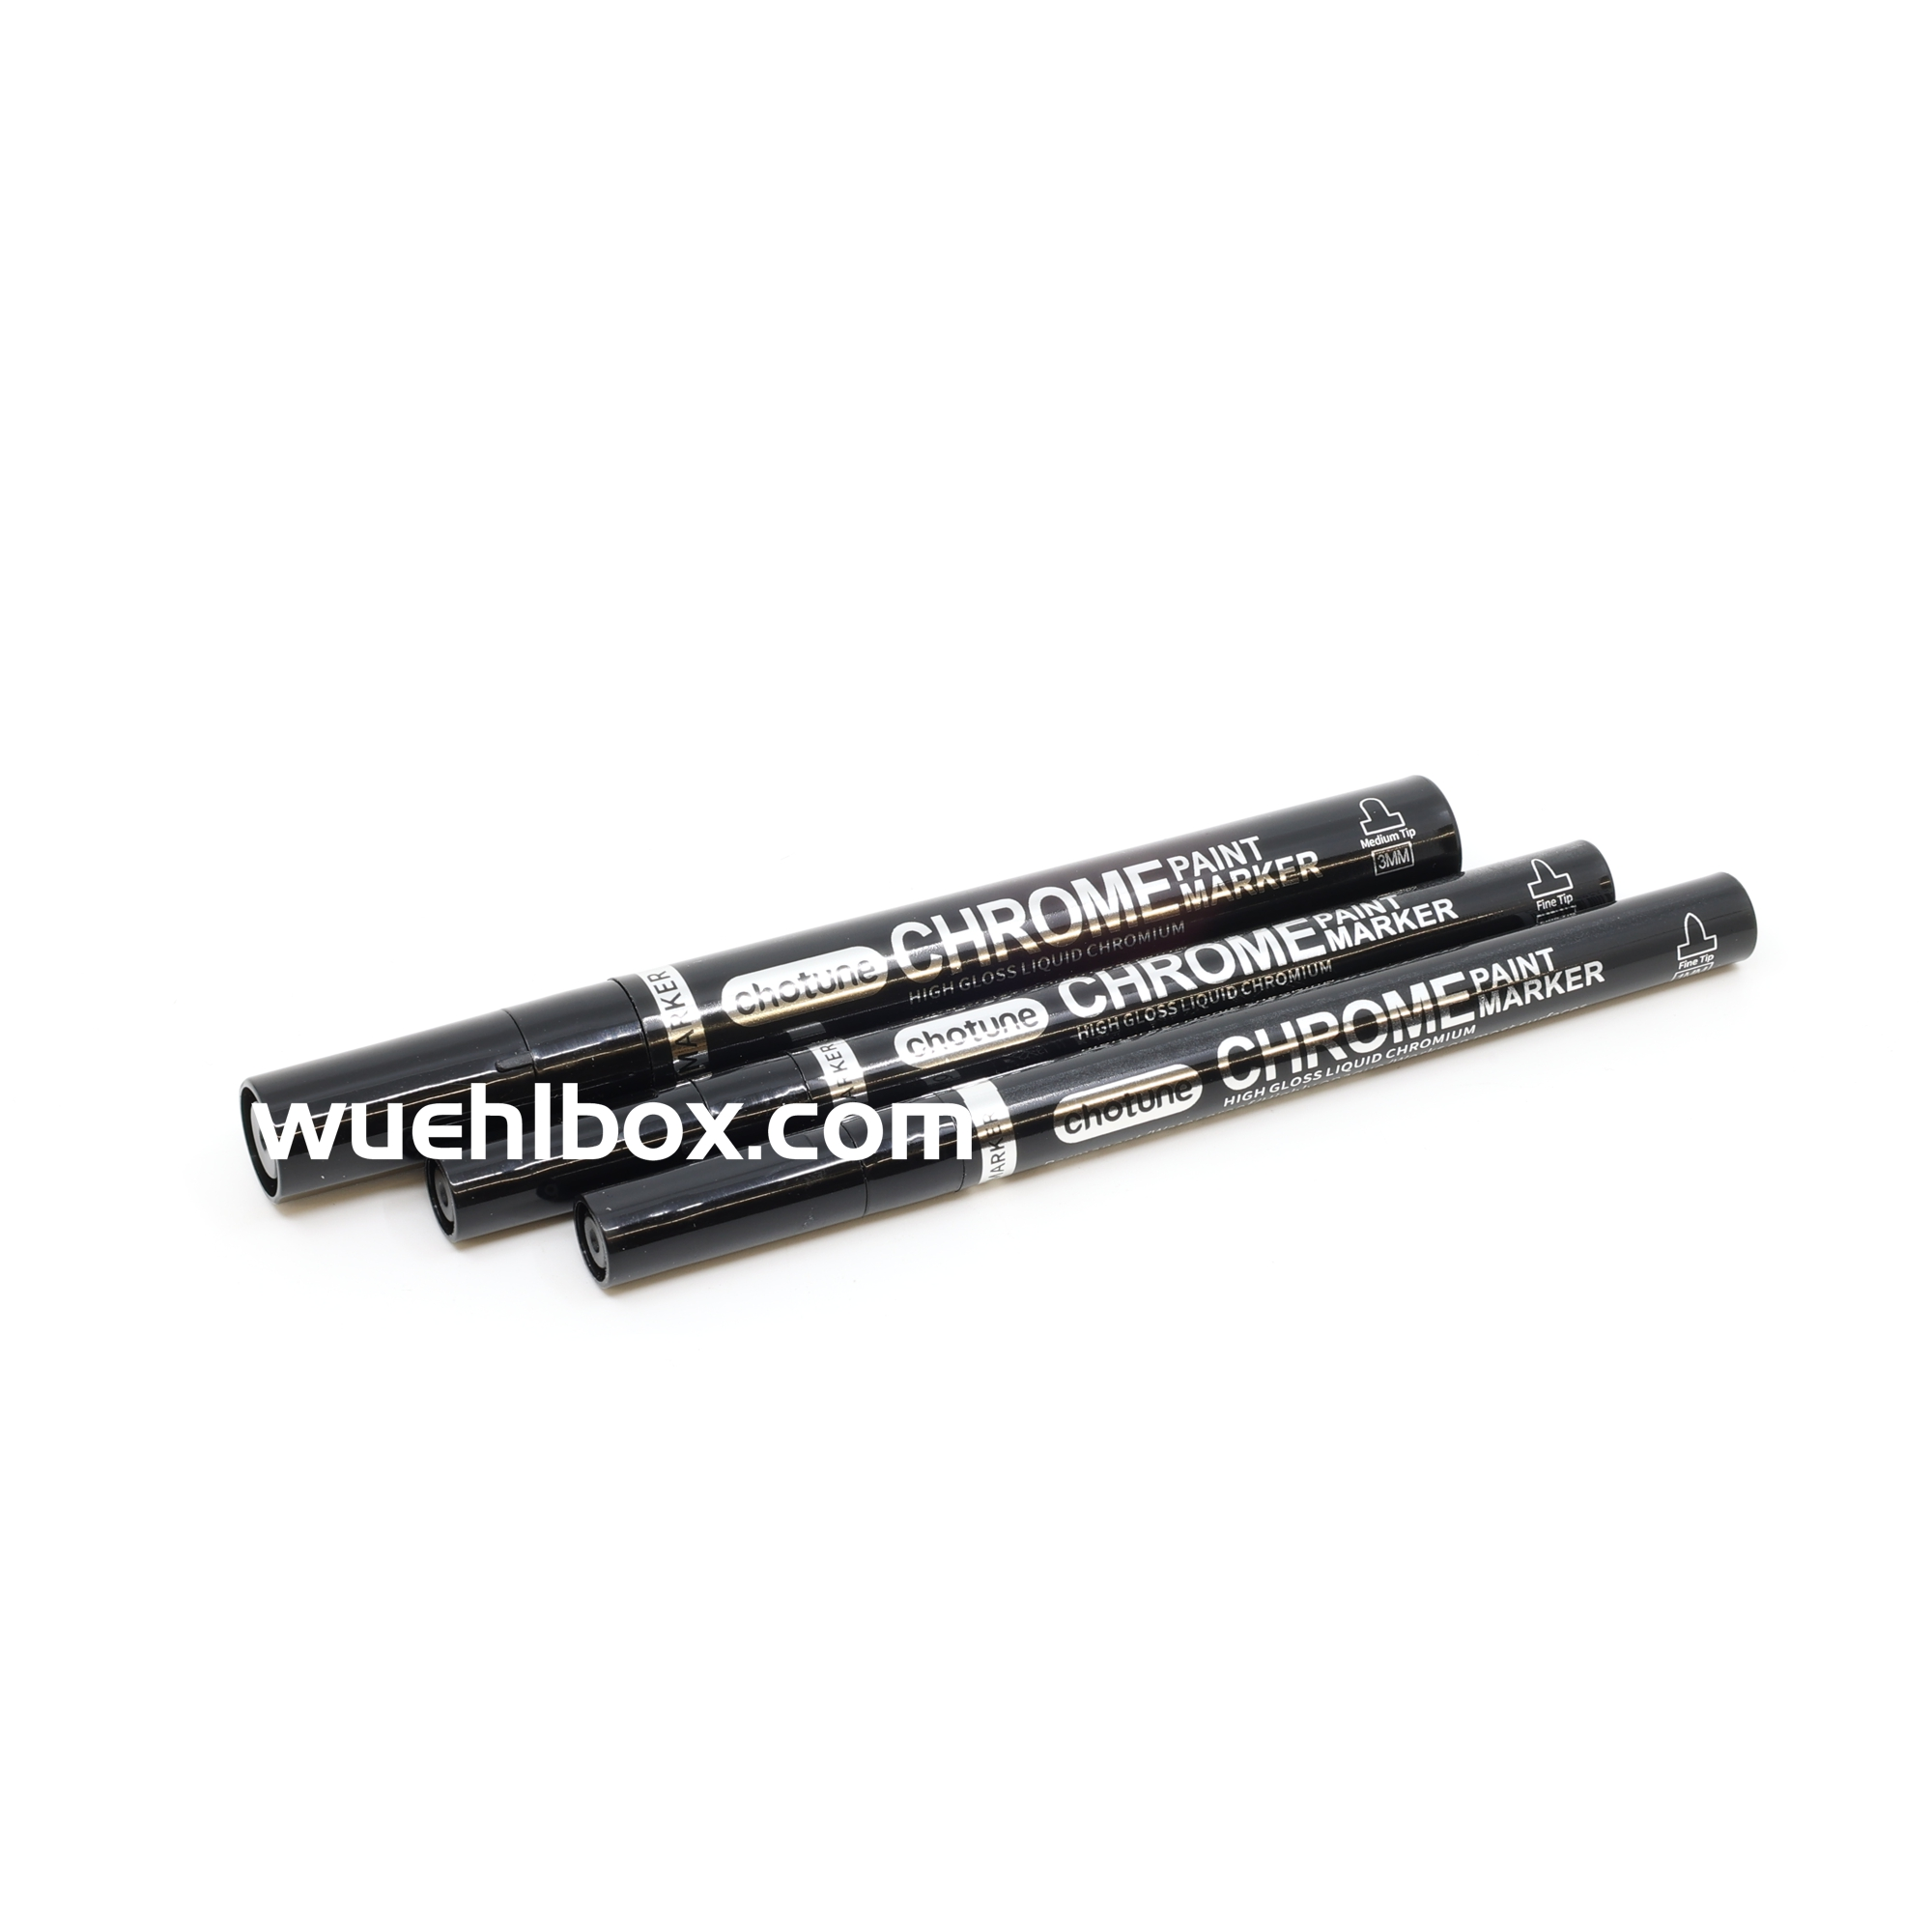 Chrome pen set